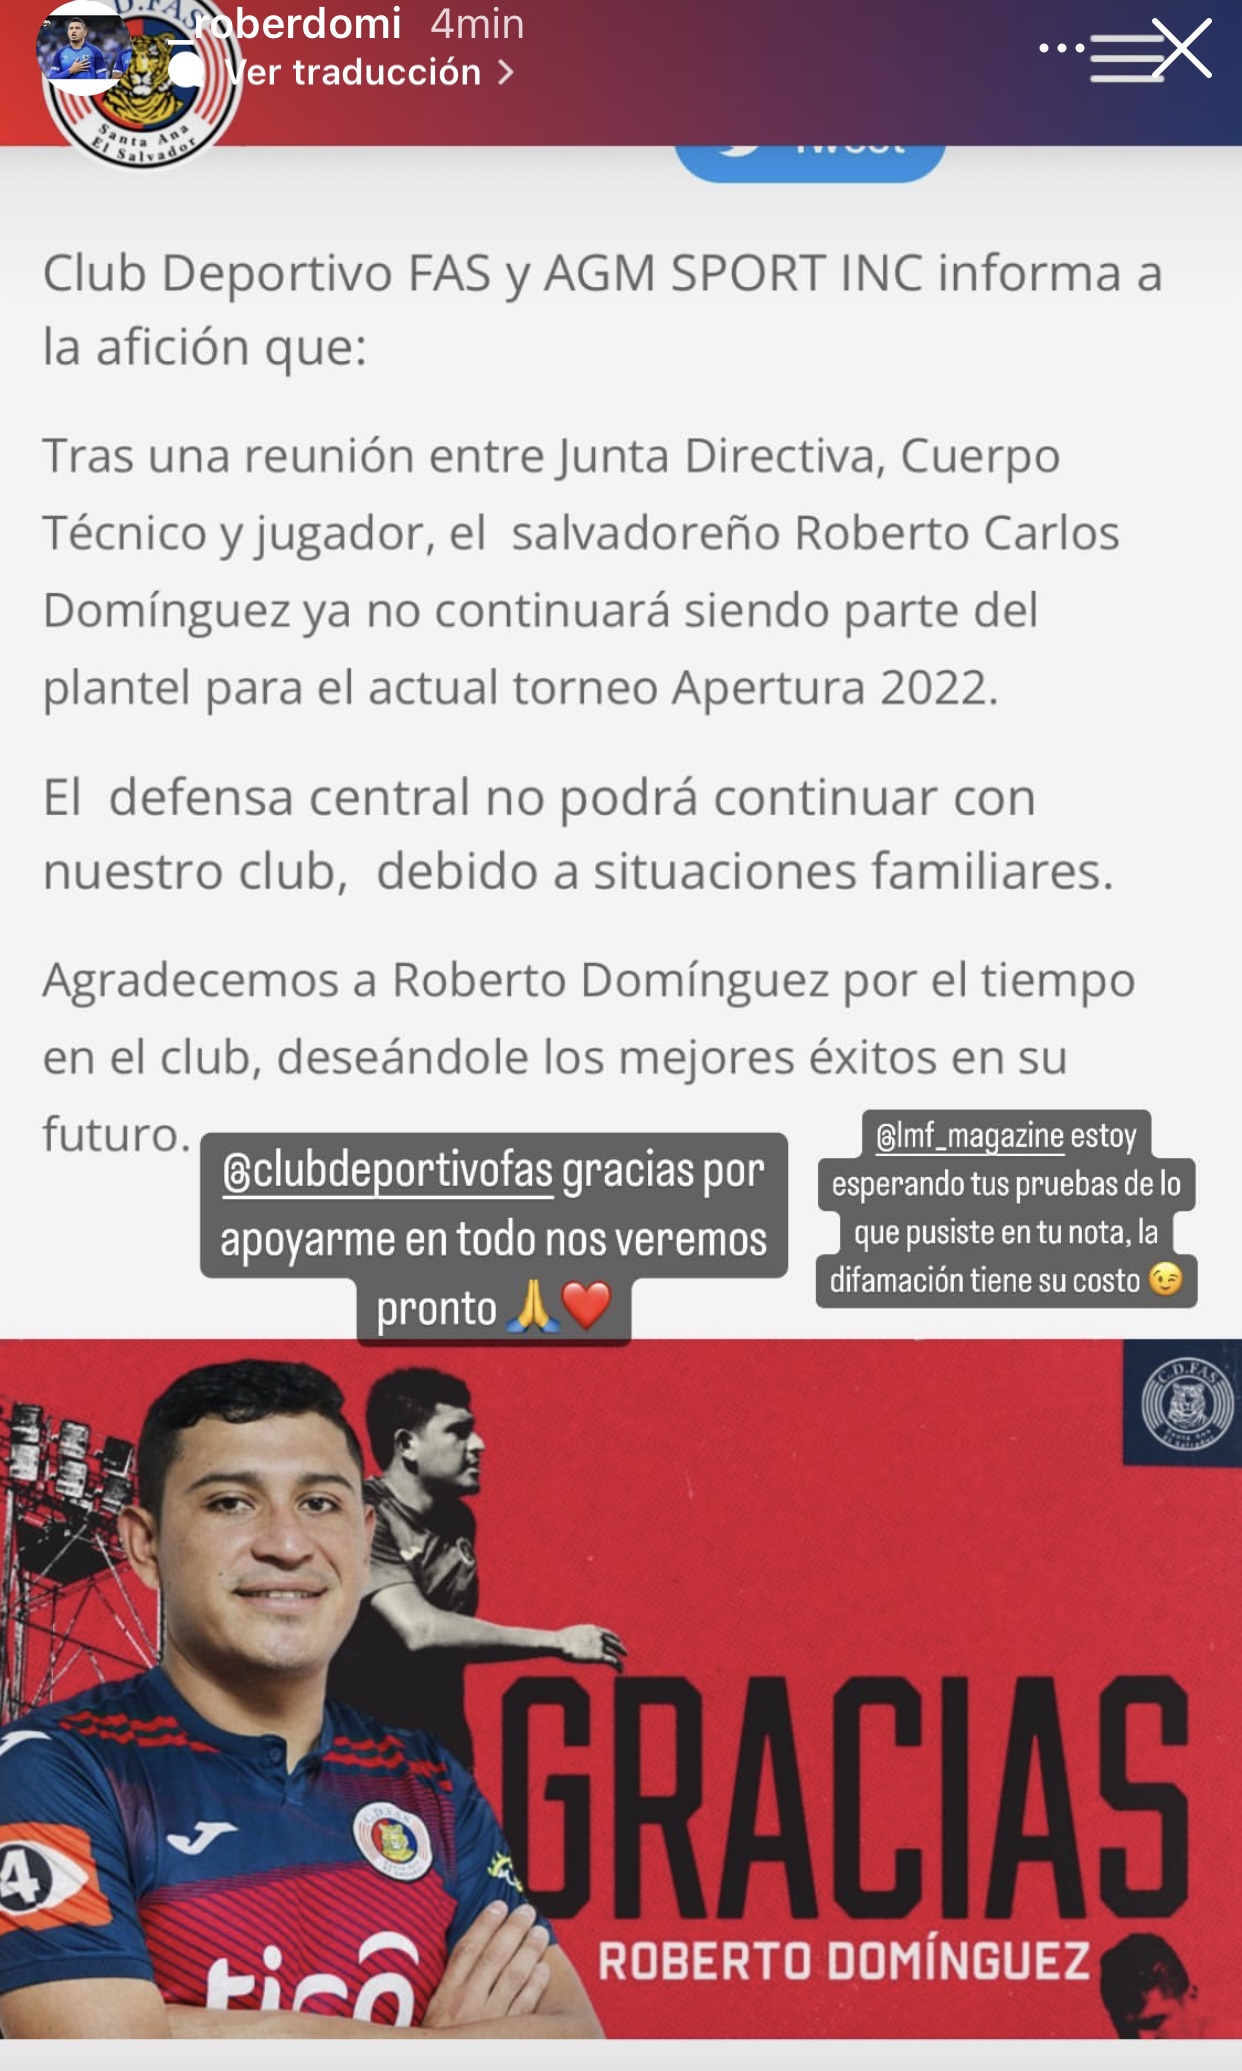 Imagen retomada de la cuenta de Instagram del jugador Roberto Domínguez a través de sus historias.